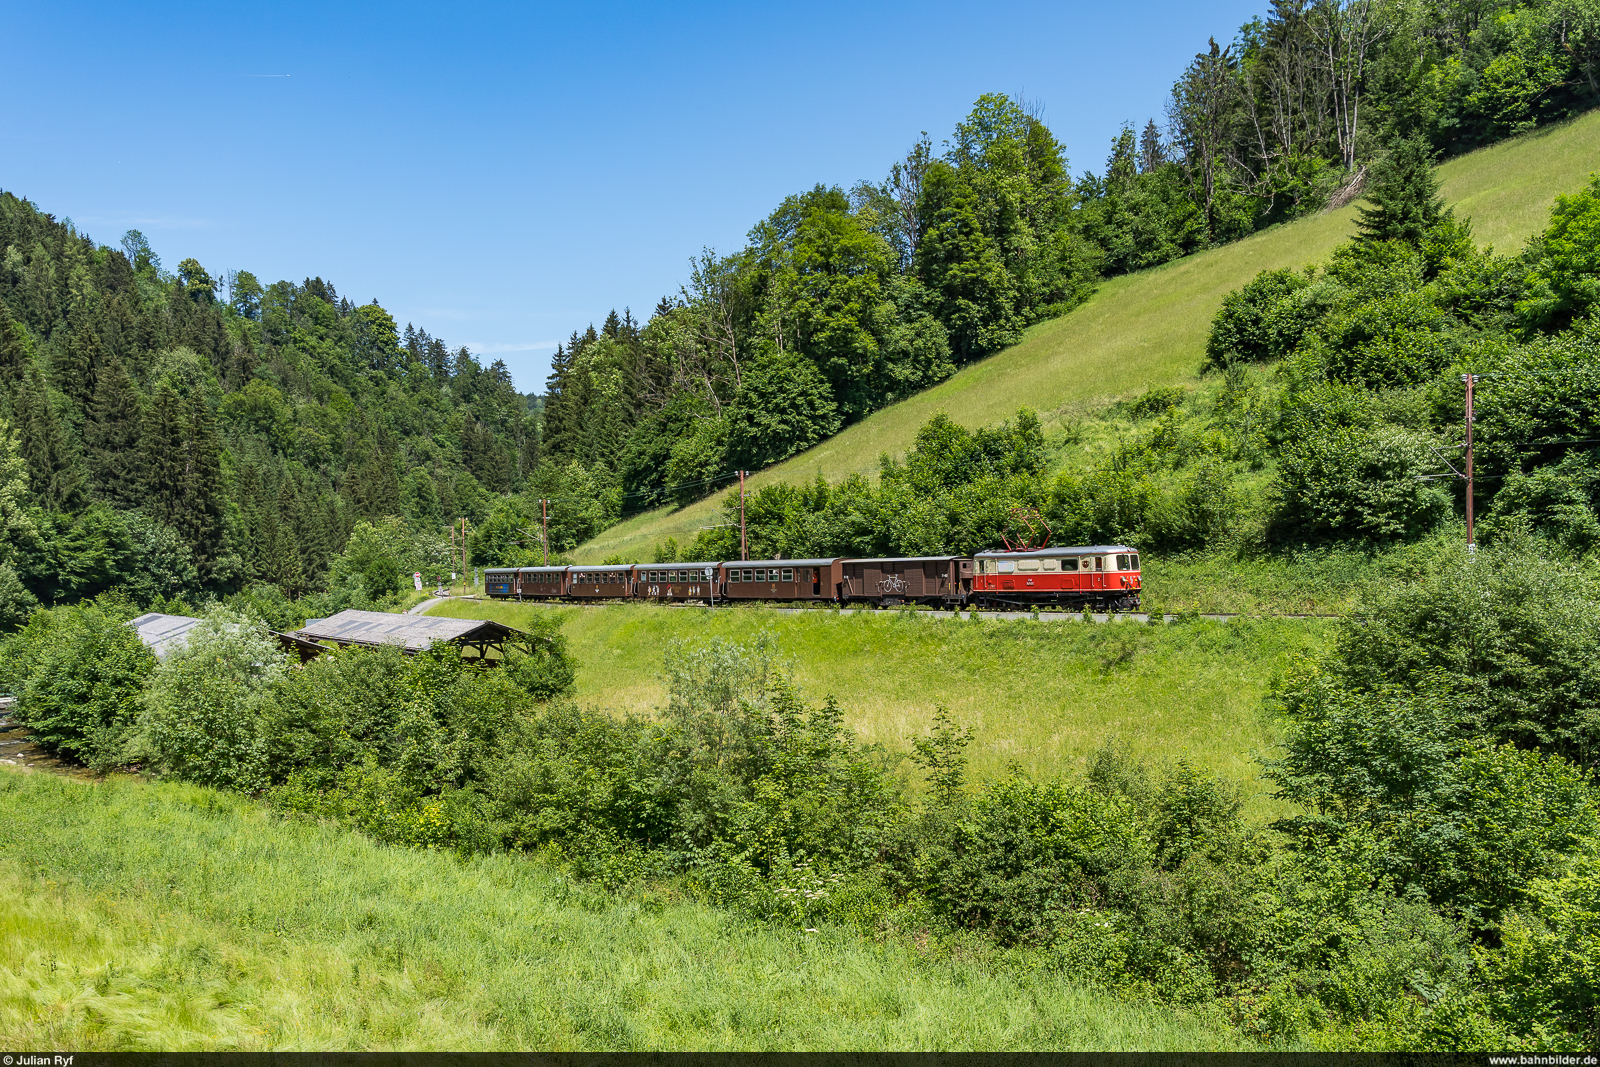 NÖVOG E14 / Laubenbachmühle, 19. Juni 2022<br>
Sonderzug im Rahmen des Schmalspurfestivals auf der Mariazellerbahn